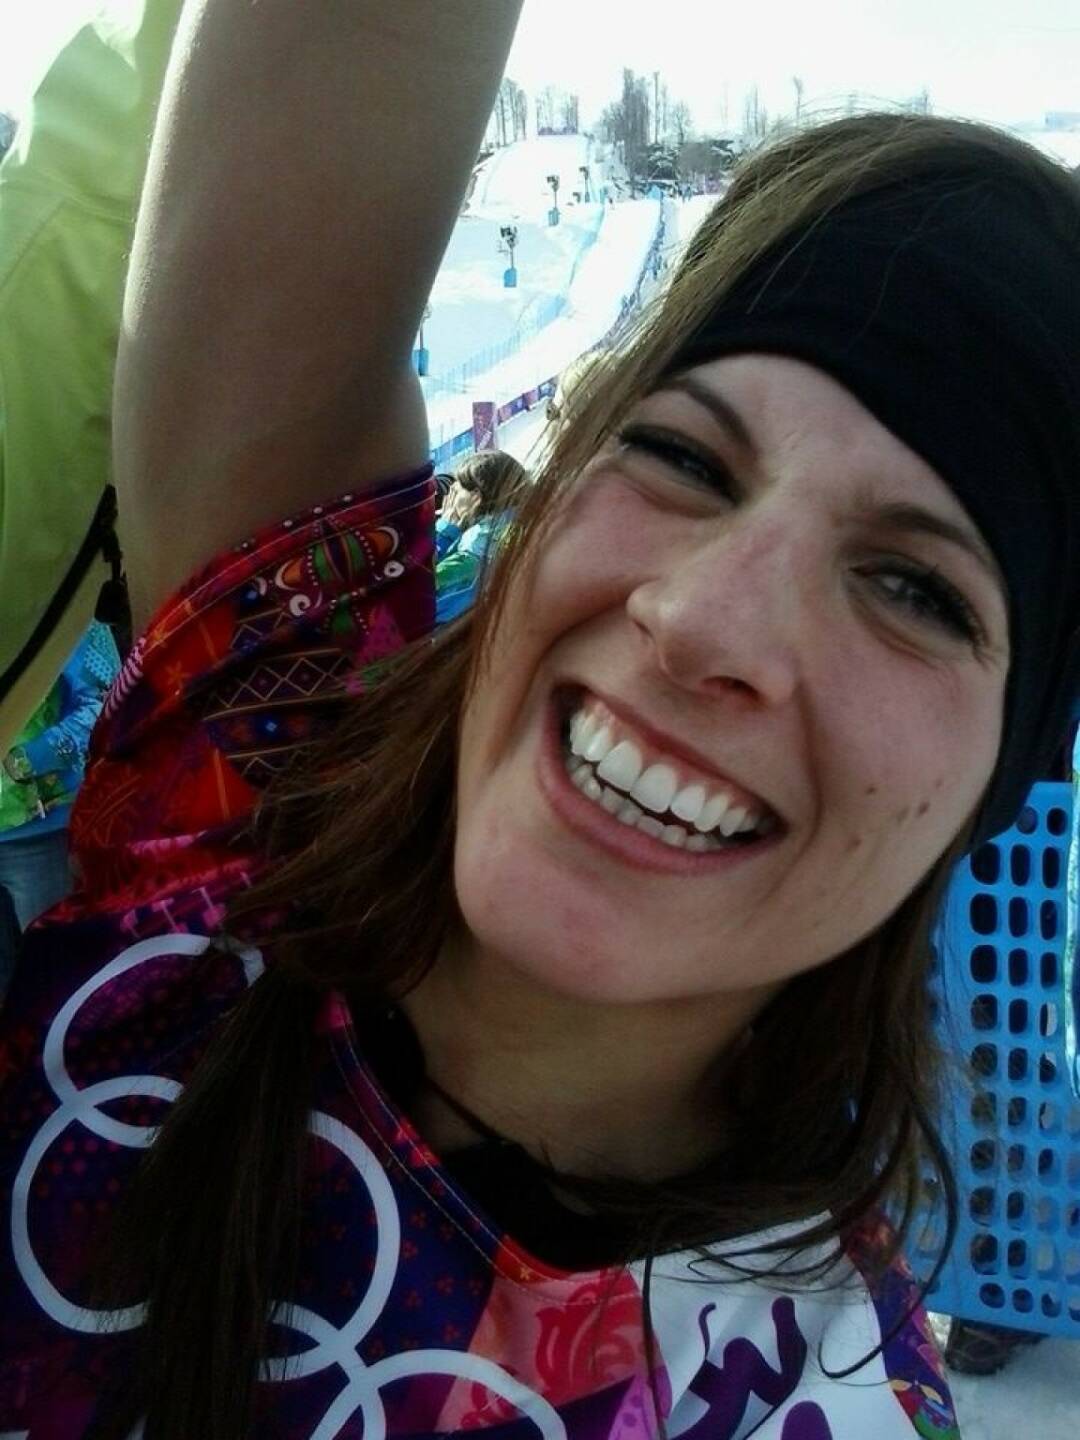 Jubel Julia Dujmovits: Die Gold-Snowboarderin hat mit diesem Bild auf https://www.facebook.com/JuliaDujmovits mehr als 10.000 Likes erhalten. In nur einer Stunde. Ein Big Like auch von uns!